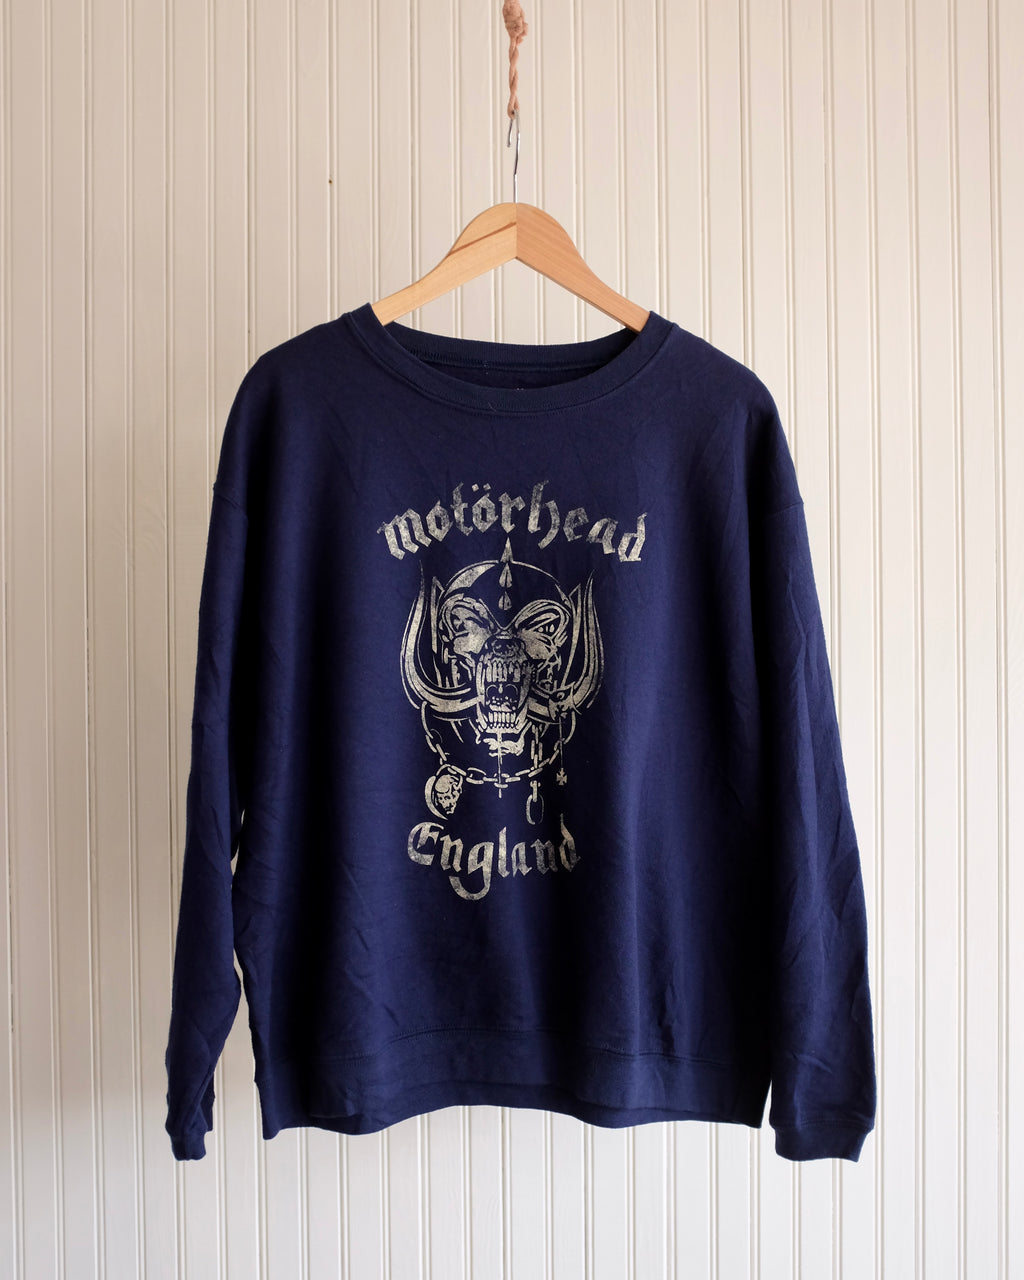 Motorhead Sweatshirt - Navy